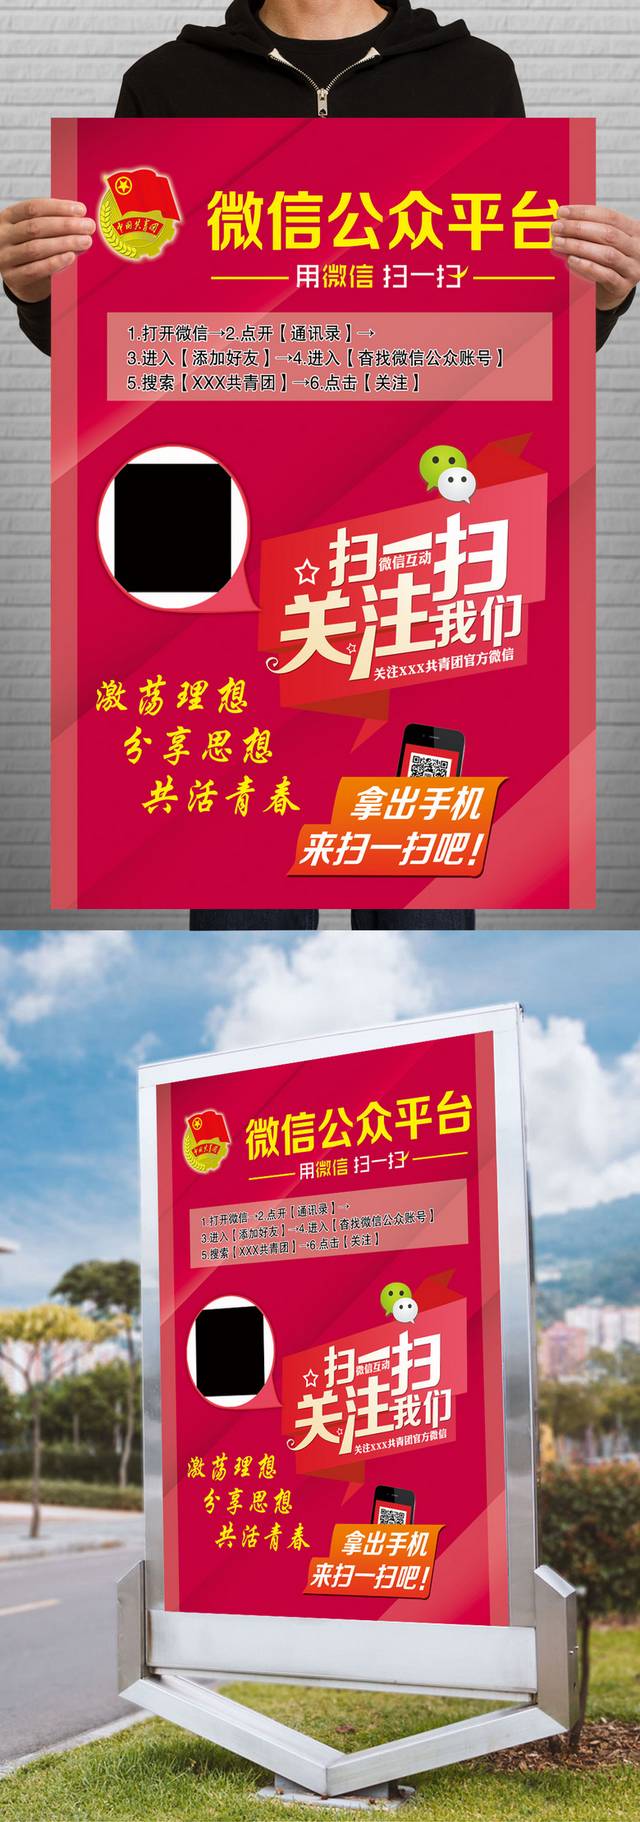 微信二维码公众平台宣传海报